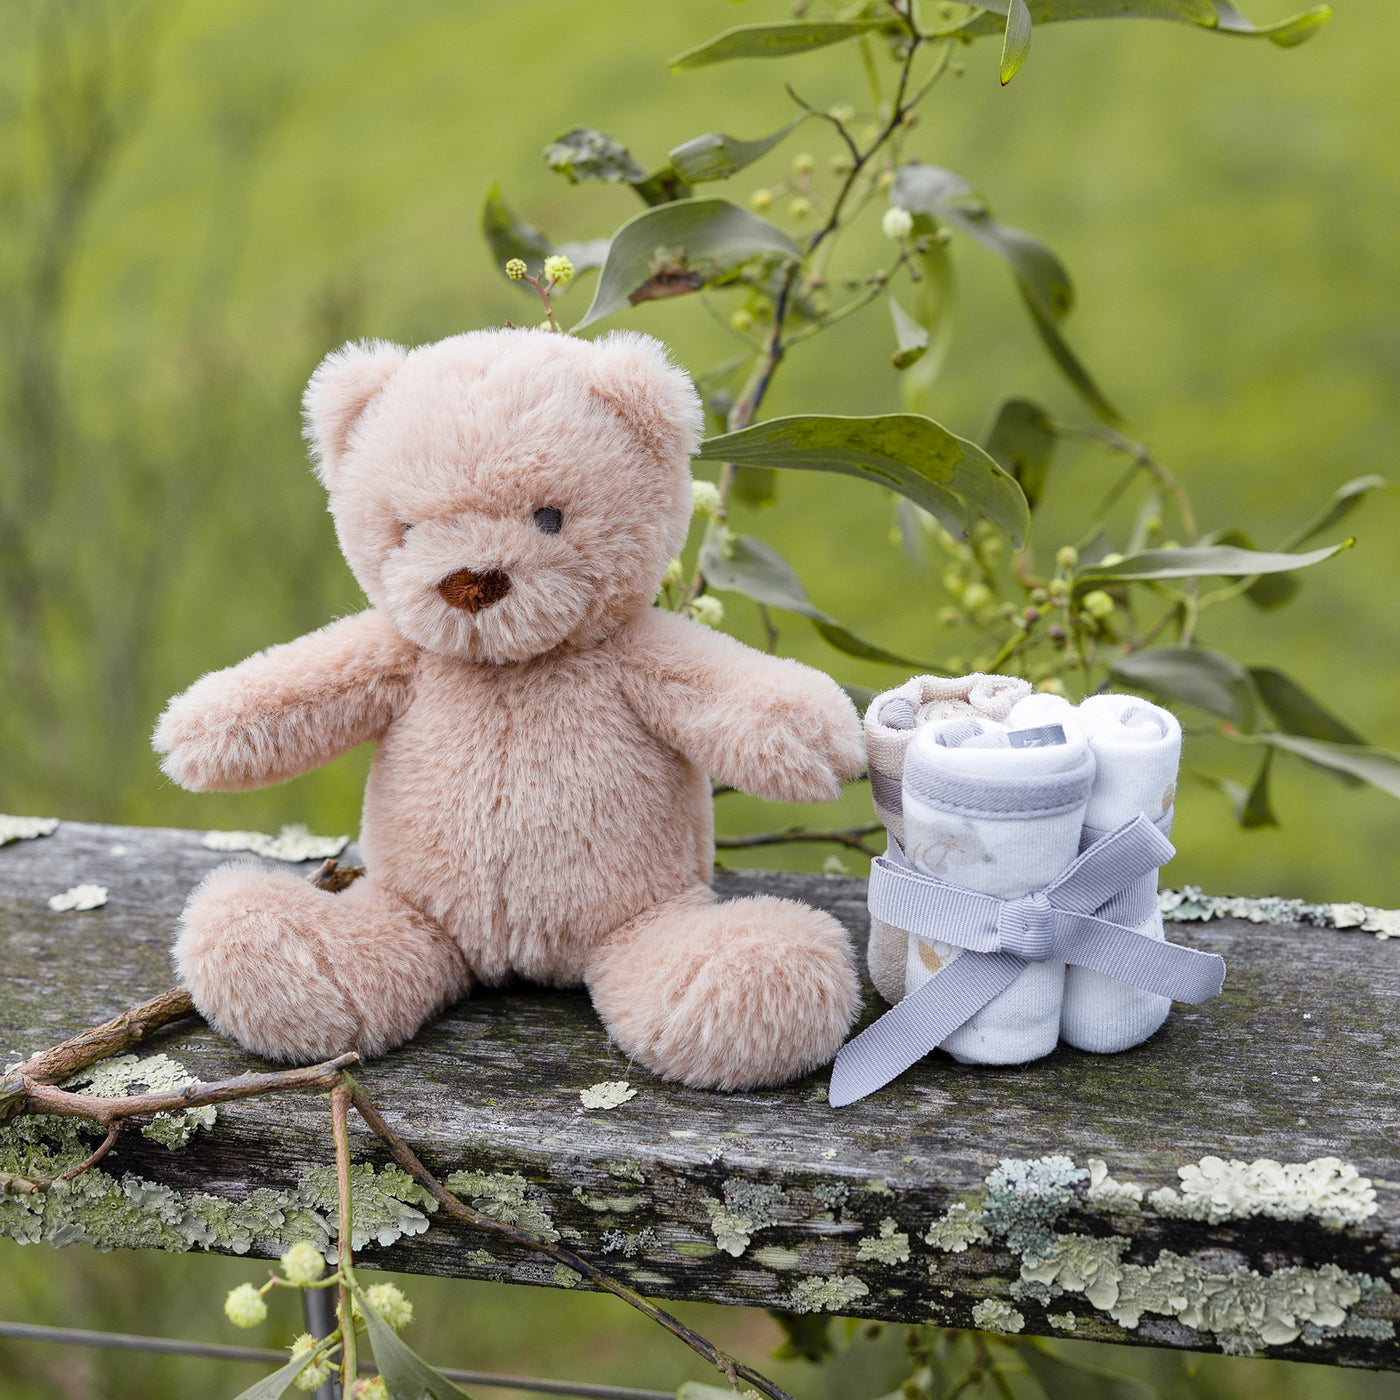 Plush Toy & Washers - Nectar Bear